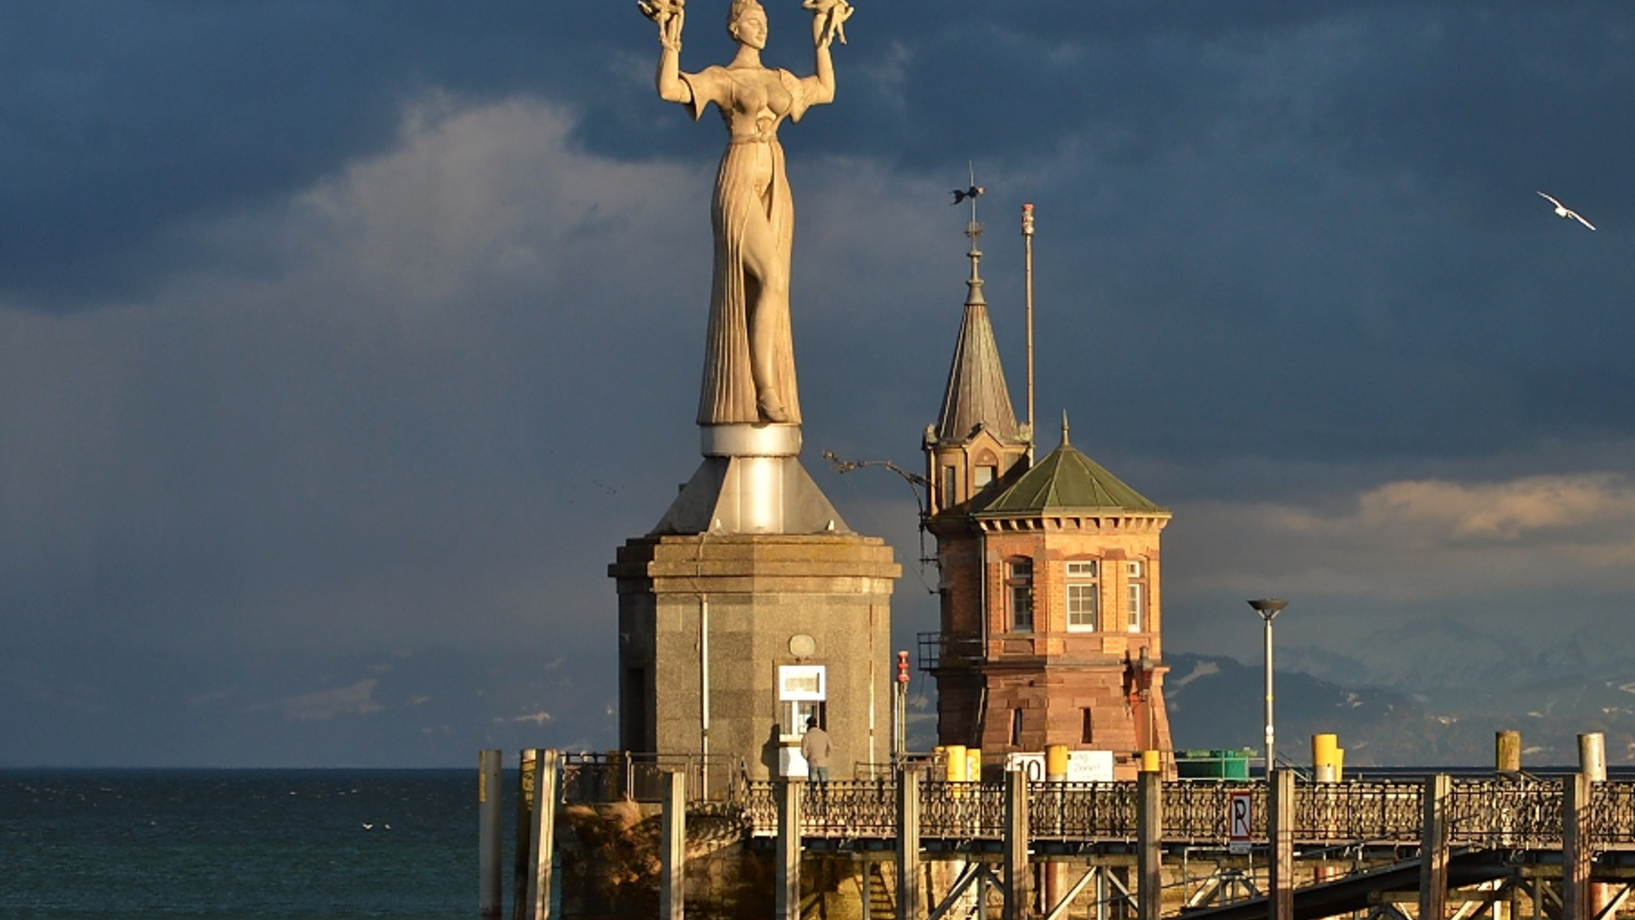 Hafen von Konstanz mit Statue der Imperia